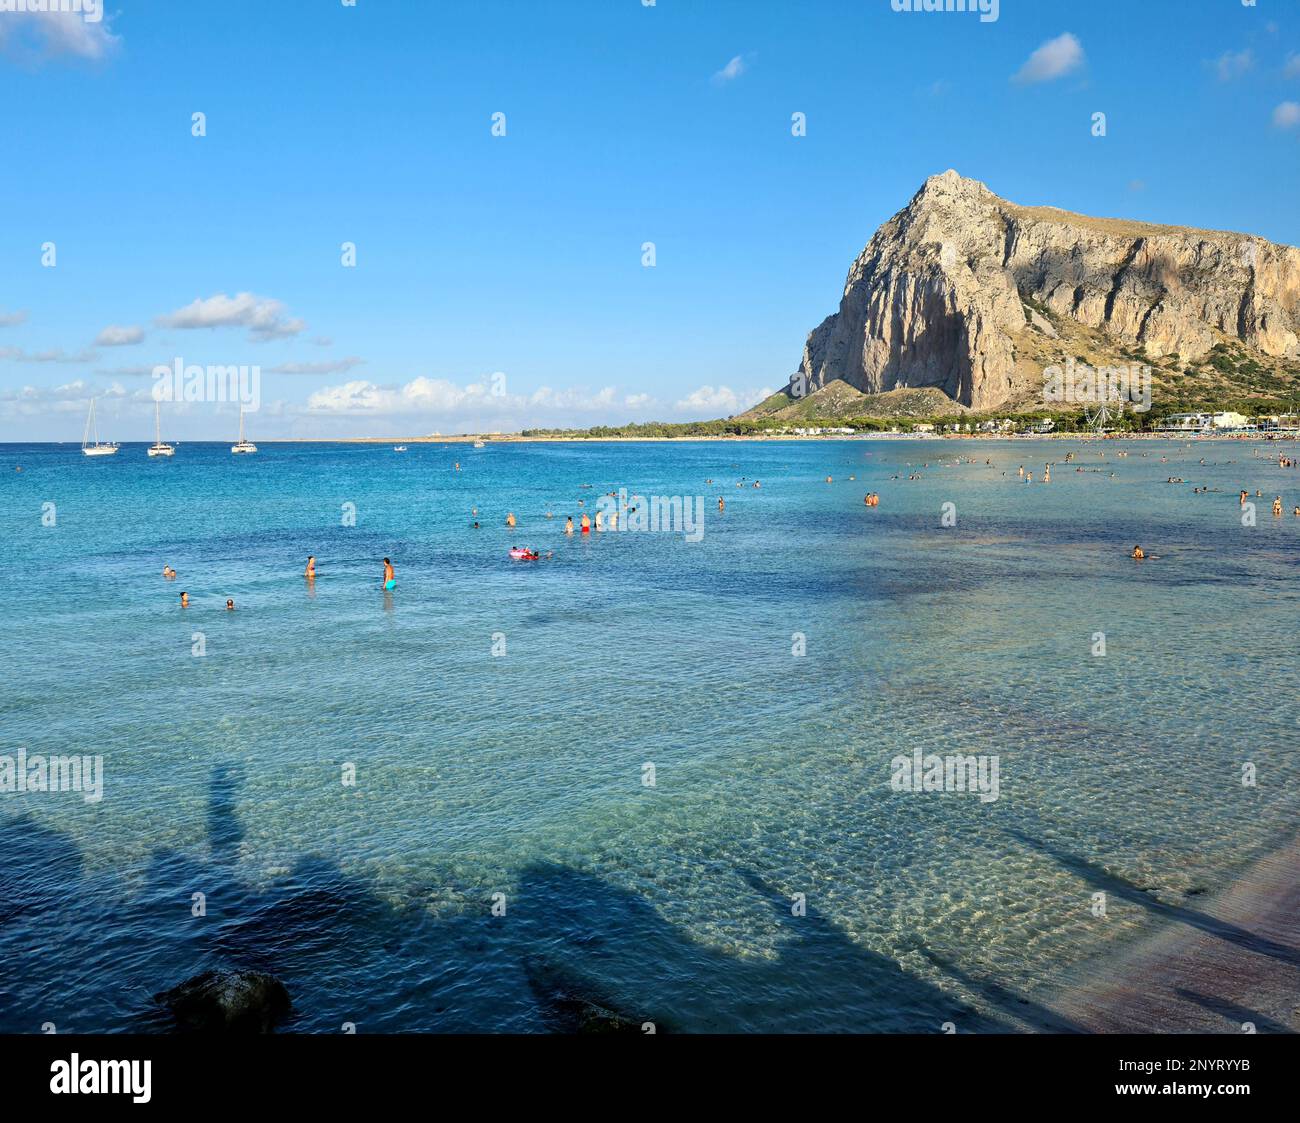 San Vito lo Capo è una bellissima località balneare siciliana in provincia di Trapani famosa per la spiaggia che si affaccia sulla baia aa dominata dall'alto dal Mon Foto Stock